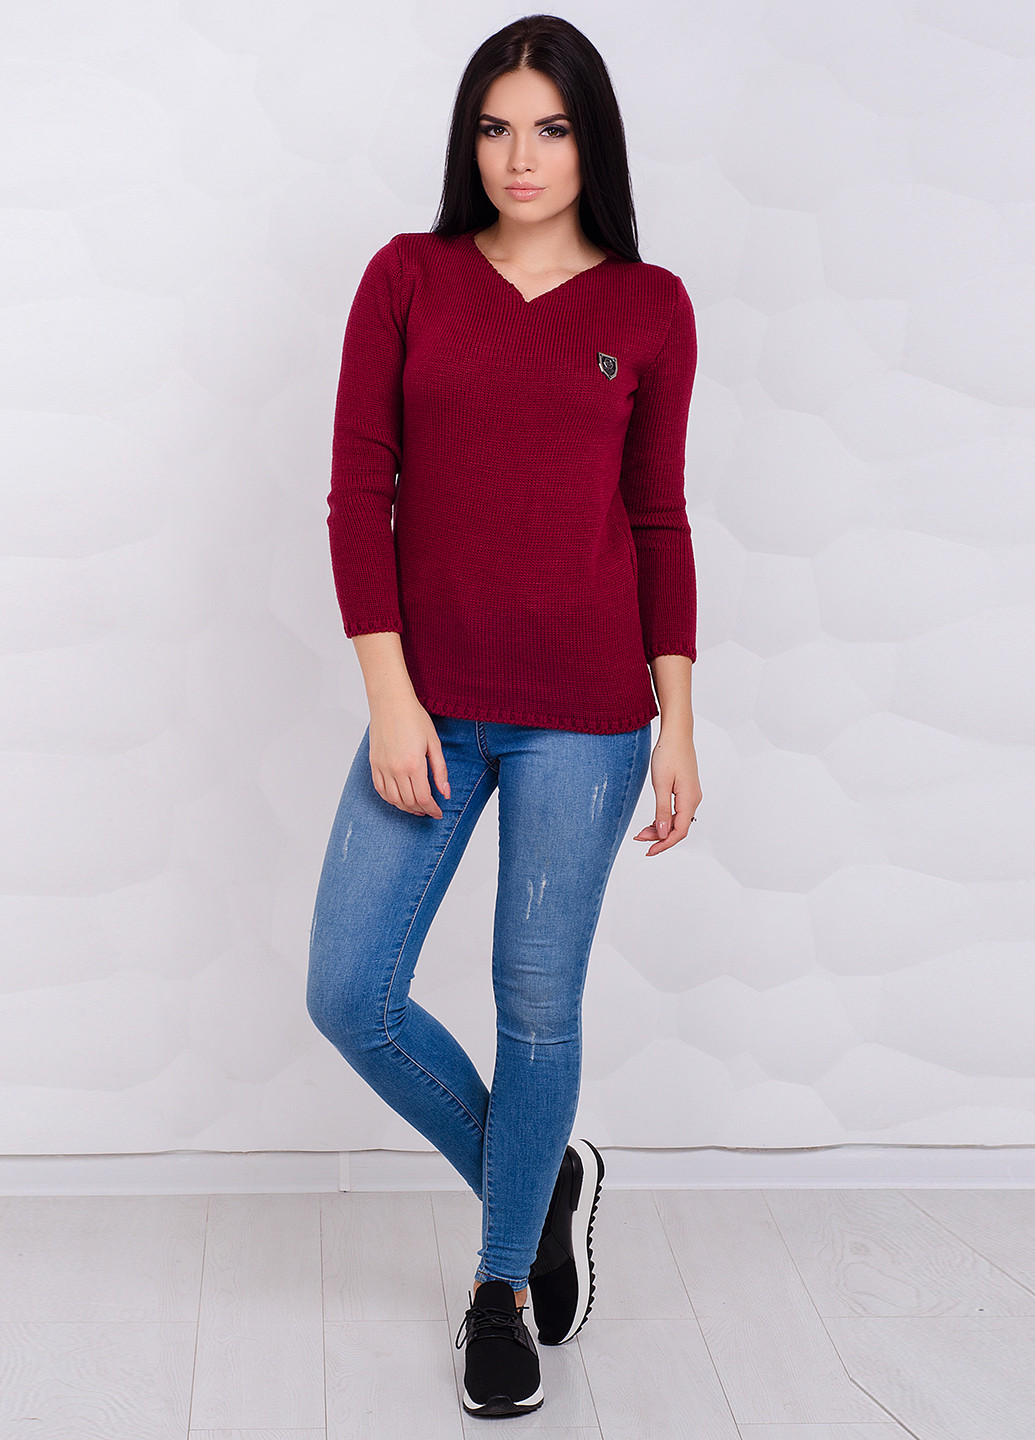 Бордовый зимний пуловер пуловер Larionoff